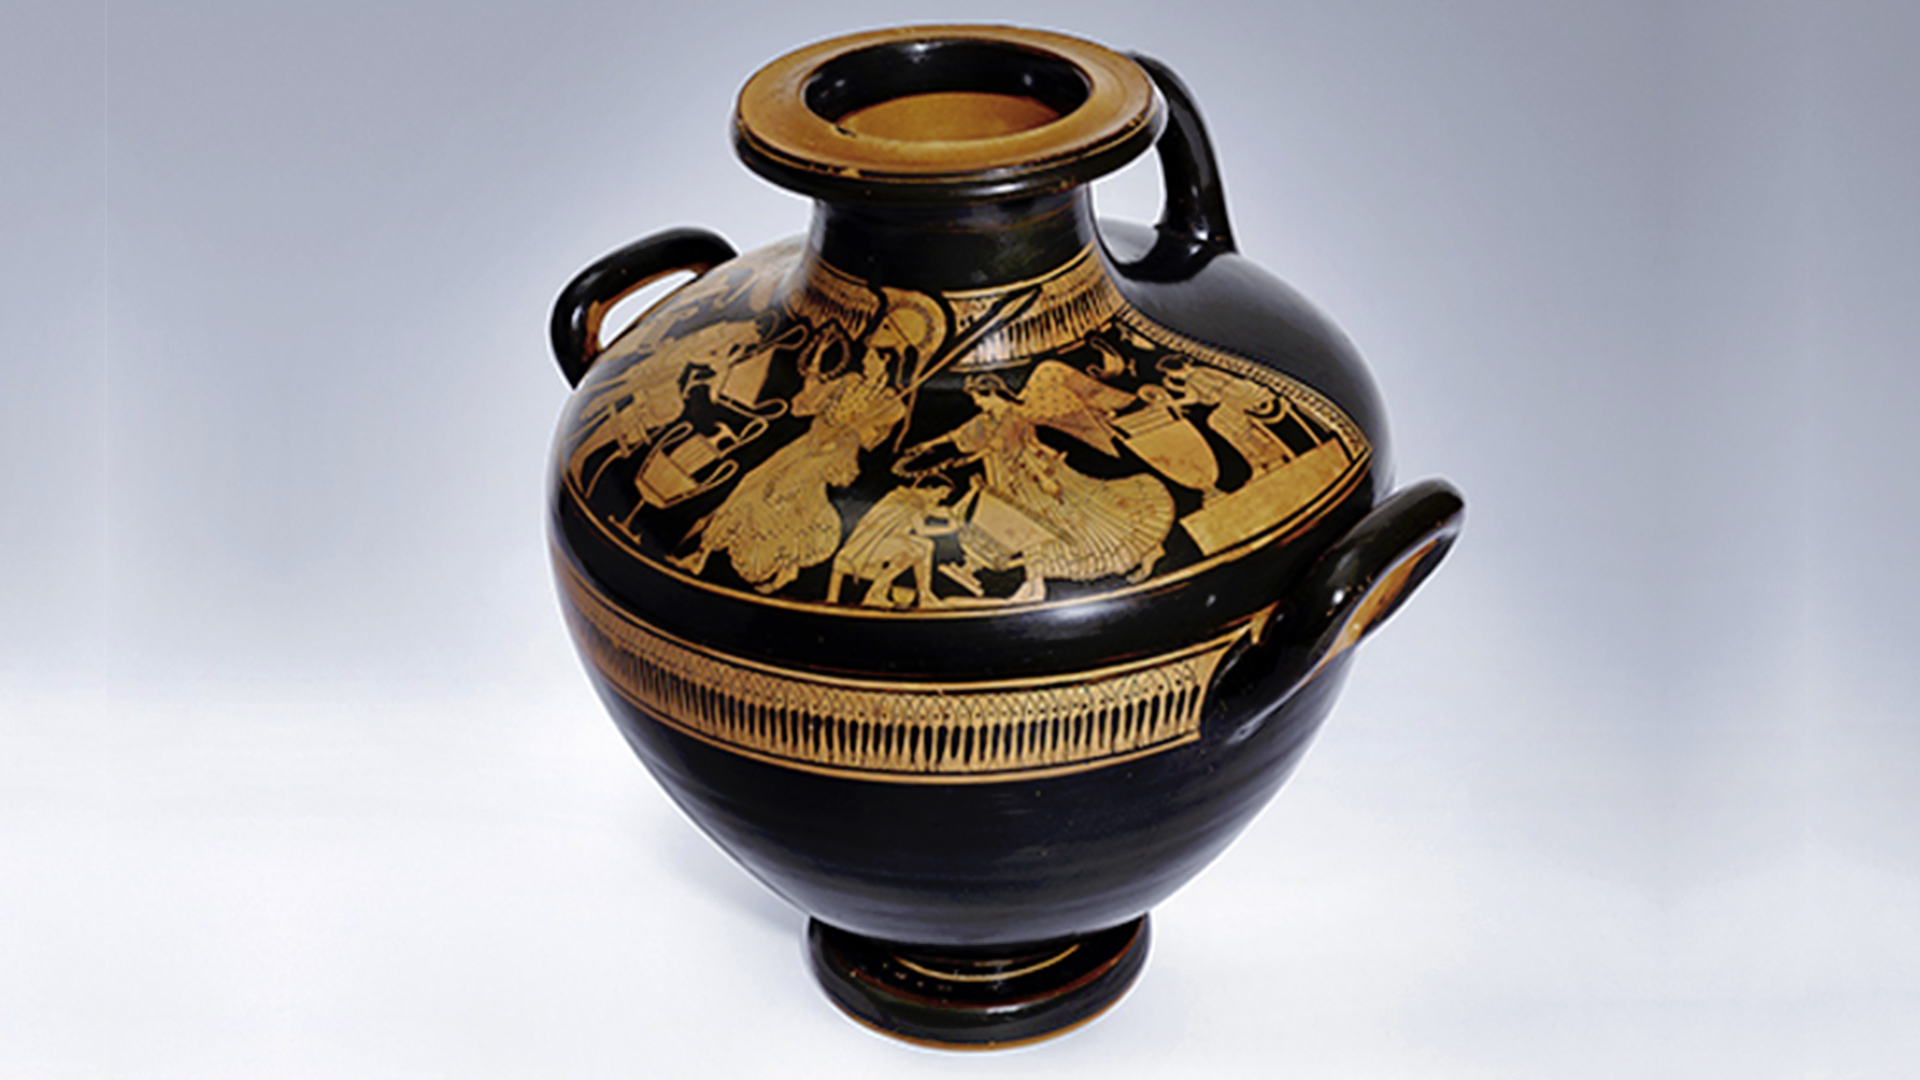 Attic and Magna Graecia pottery